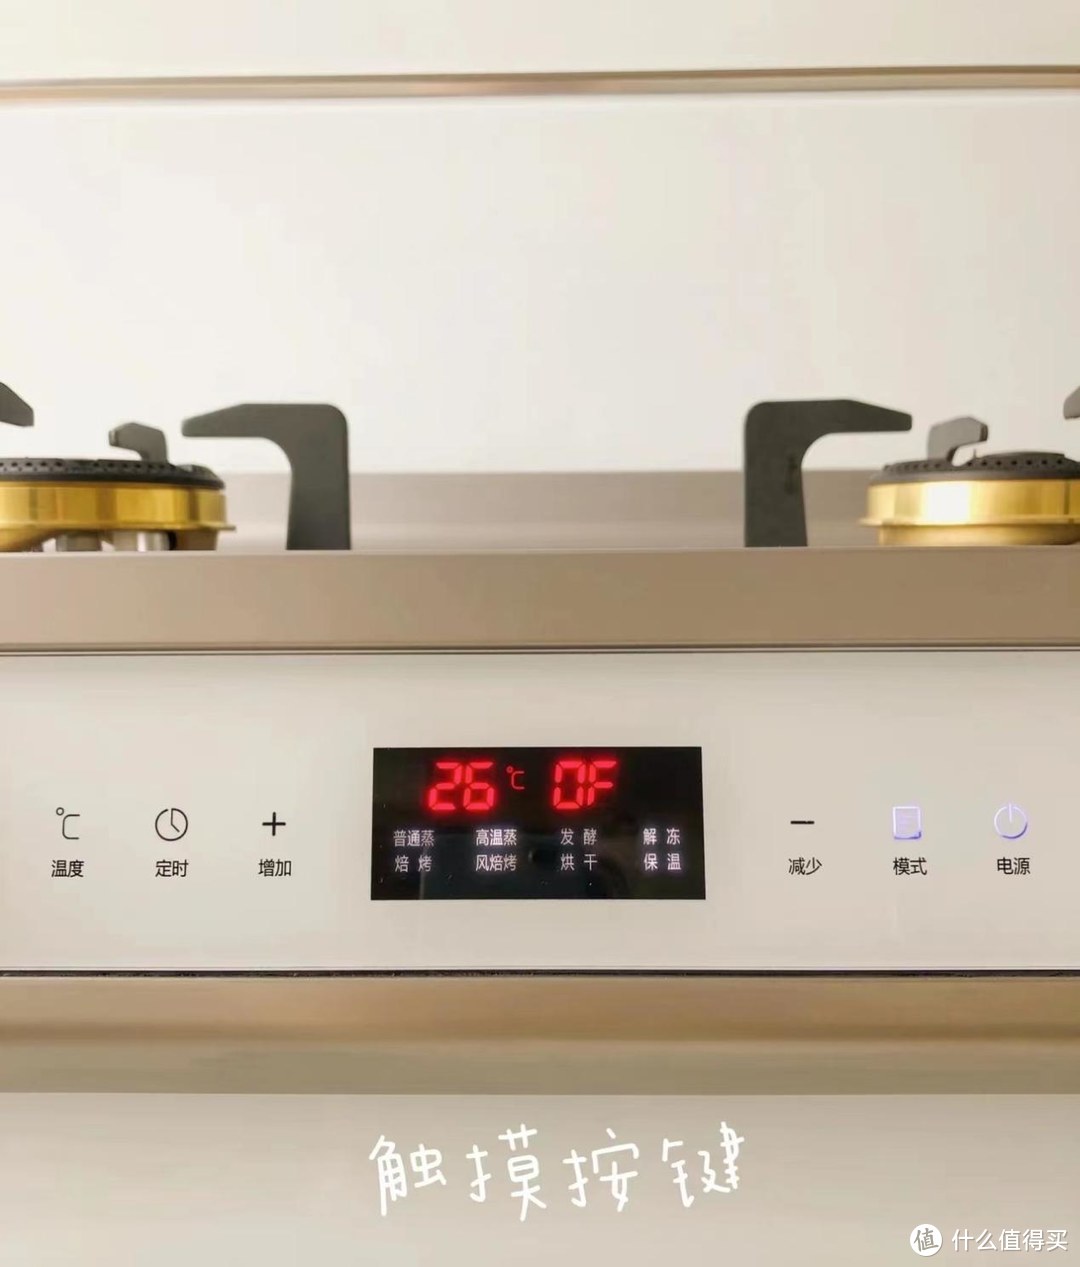 奥田A8蒸烤使用分享，和亲爱的小孩用同款集成灶是什么体验